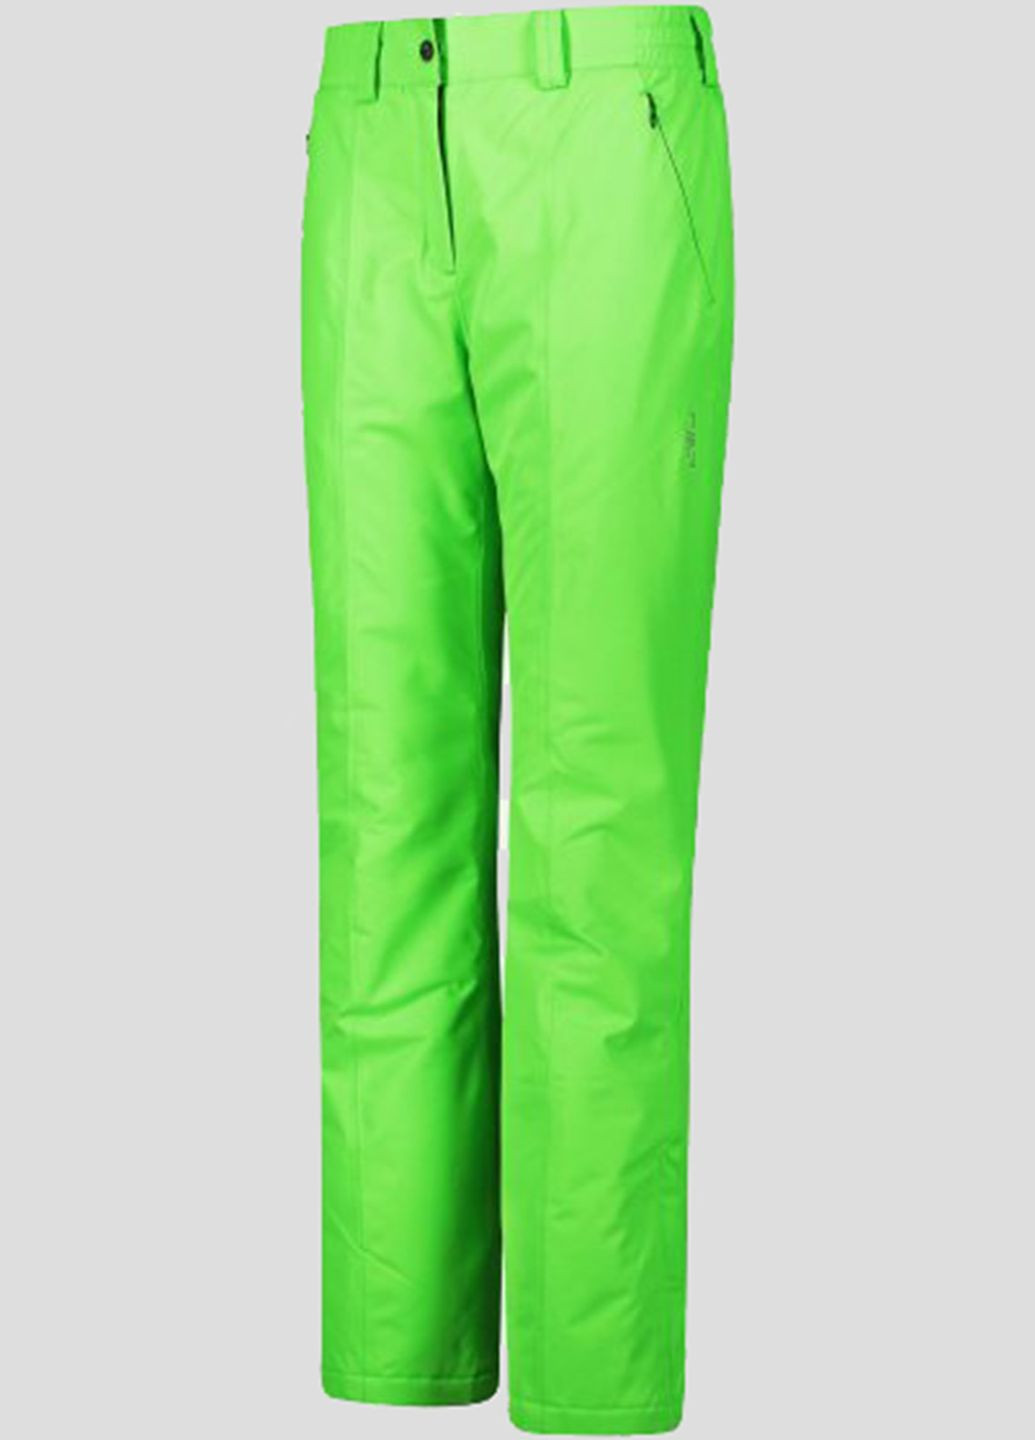 Салатовые лыжные брюки Woman Pant CMP (260362515)